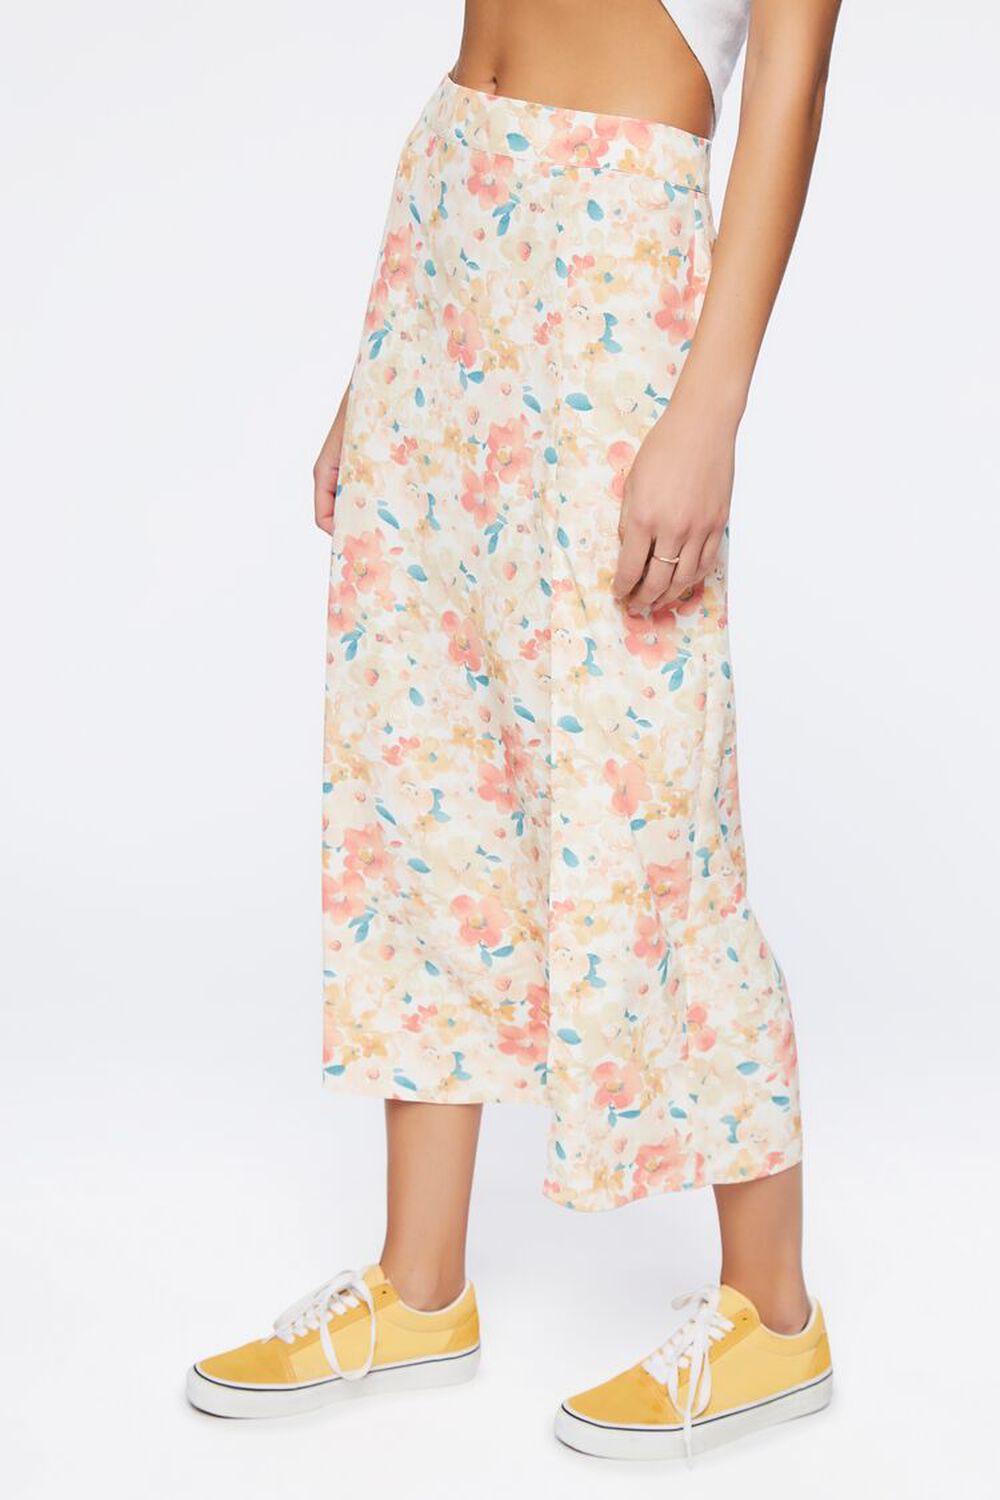 CREAM/MULTI Floral Print Midi Skirt, image 3